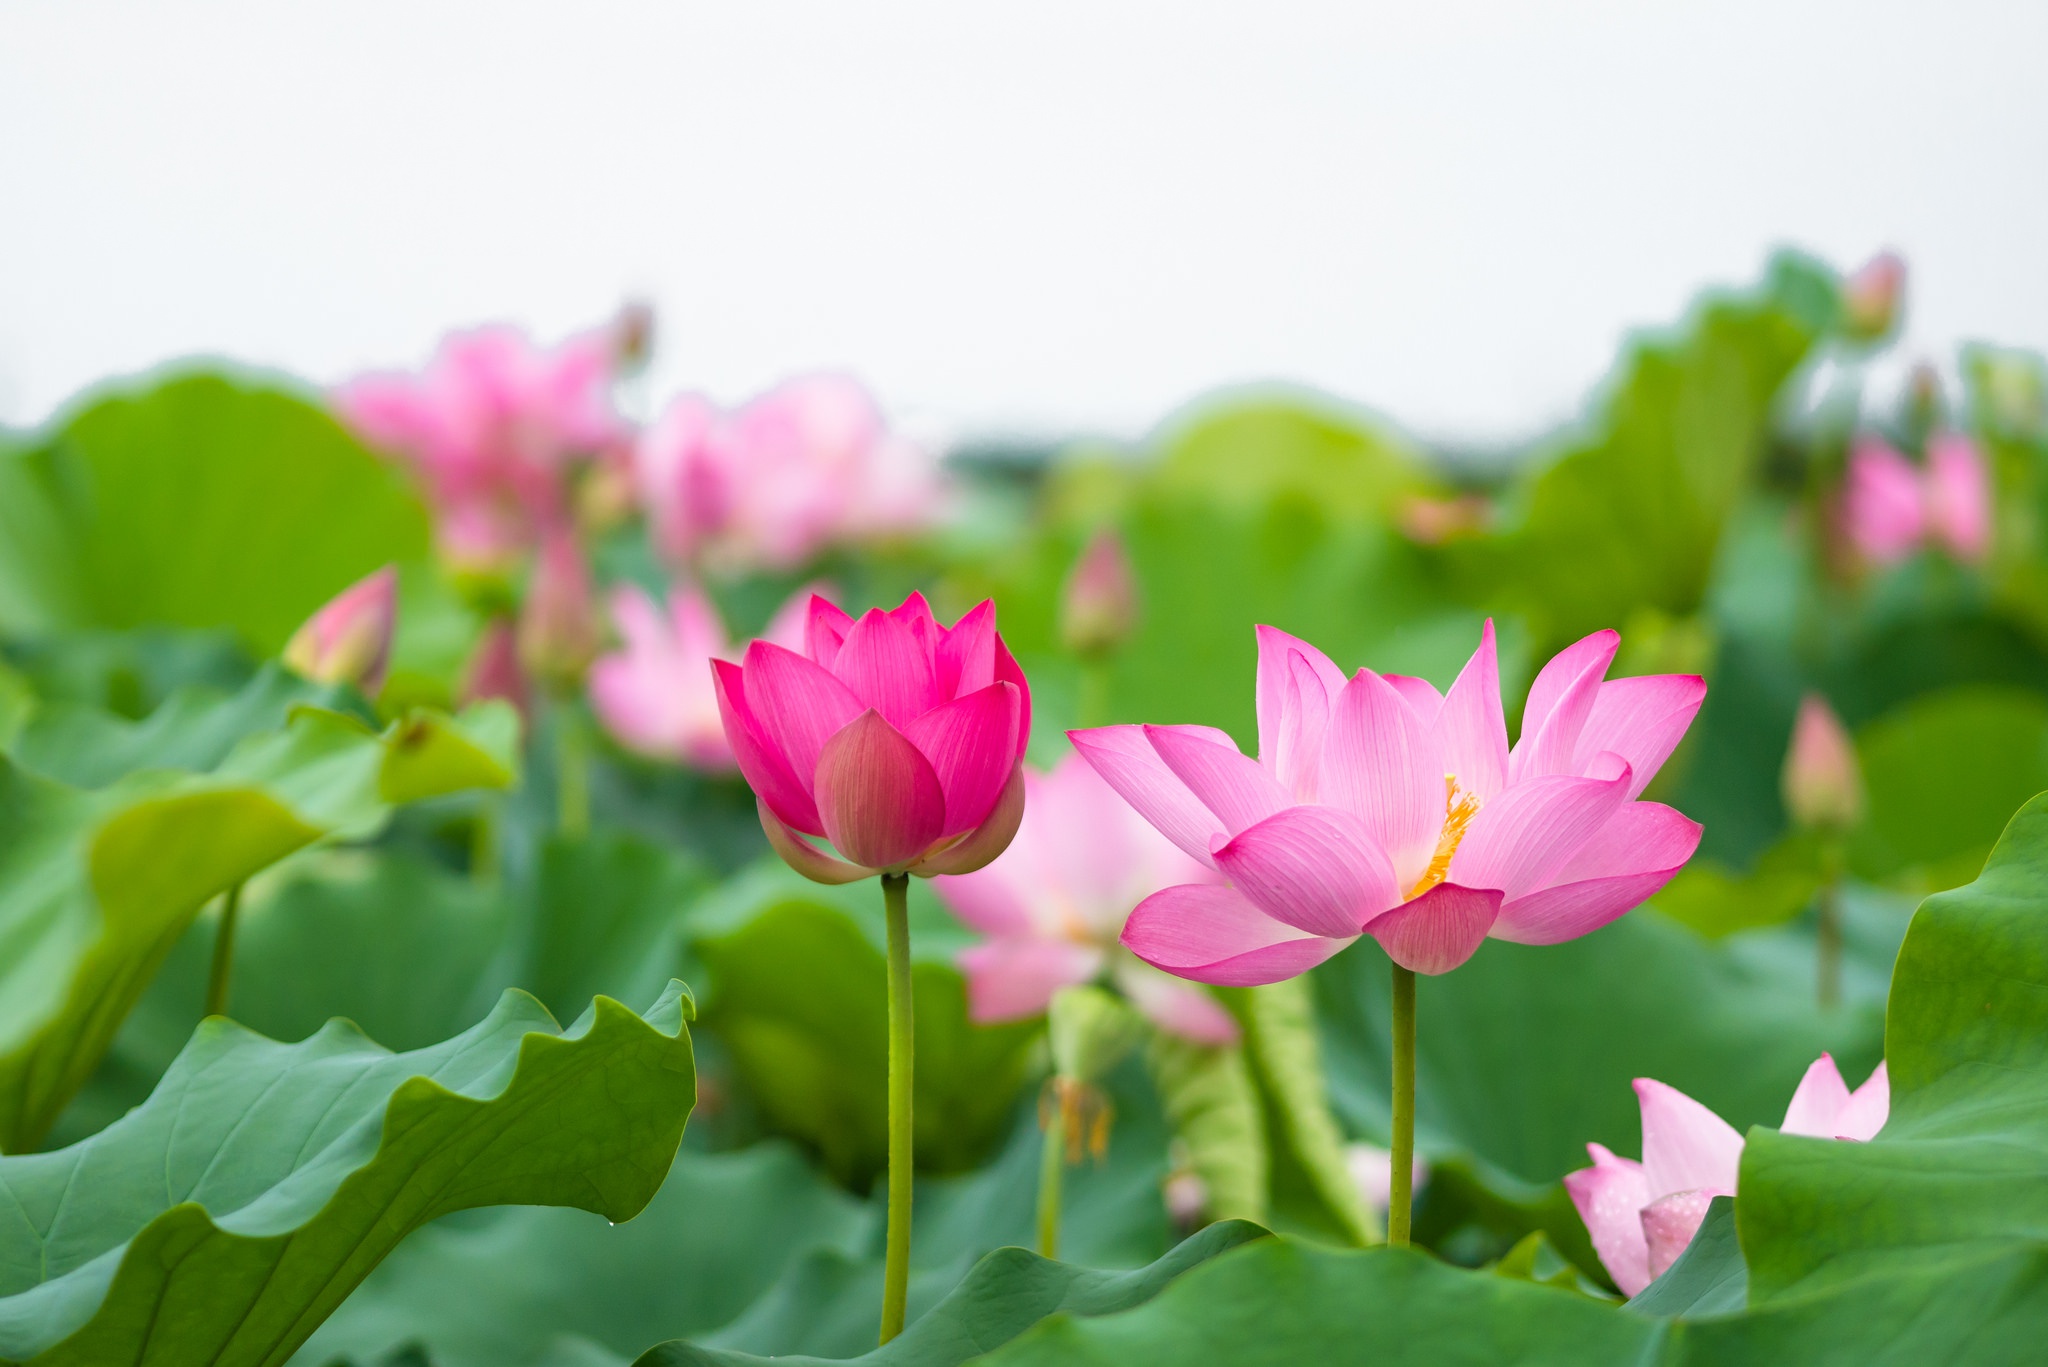 Với nhiều hoa sen trên mặt nước, xứ sở Việt Nam đã trở thành một địa điểm du lịch nổi tiếng với những bức ảnh nghệ thuật. Để hiểu thêm về giá trị tâm linh của hoa sen, bạn nên khám phá những câu chuyện huyền bí về hoa sen trong văn hóa Việt Nam. Hãy để những bông hoa sen thổi những gió mới vào ngày của bạn.